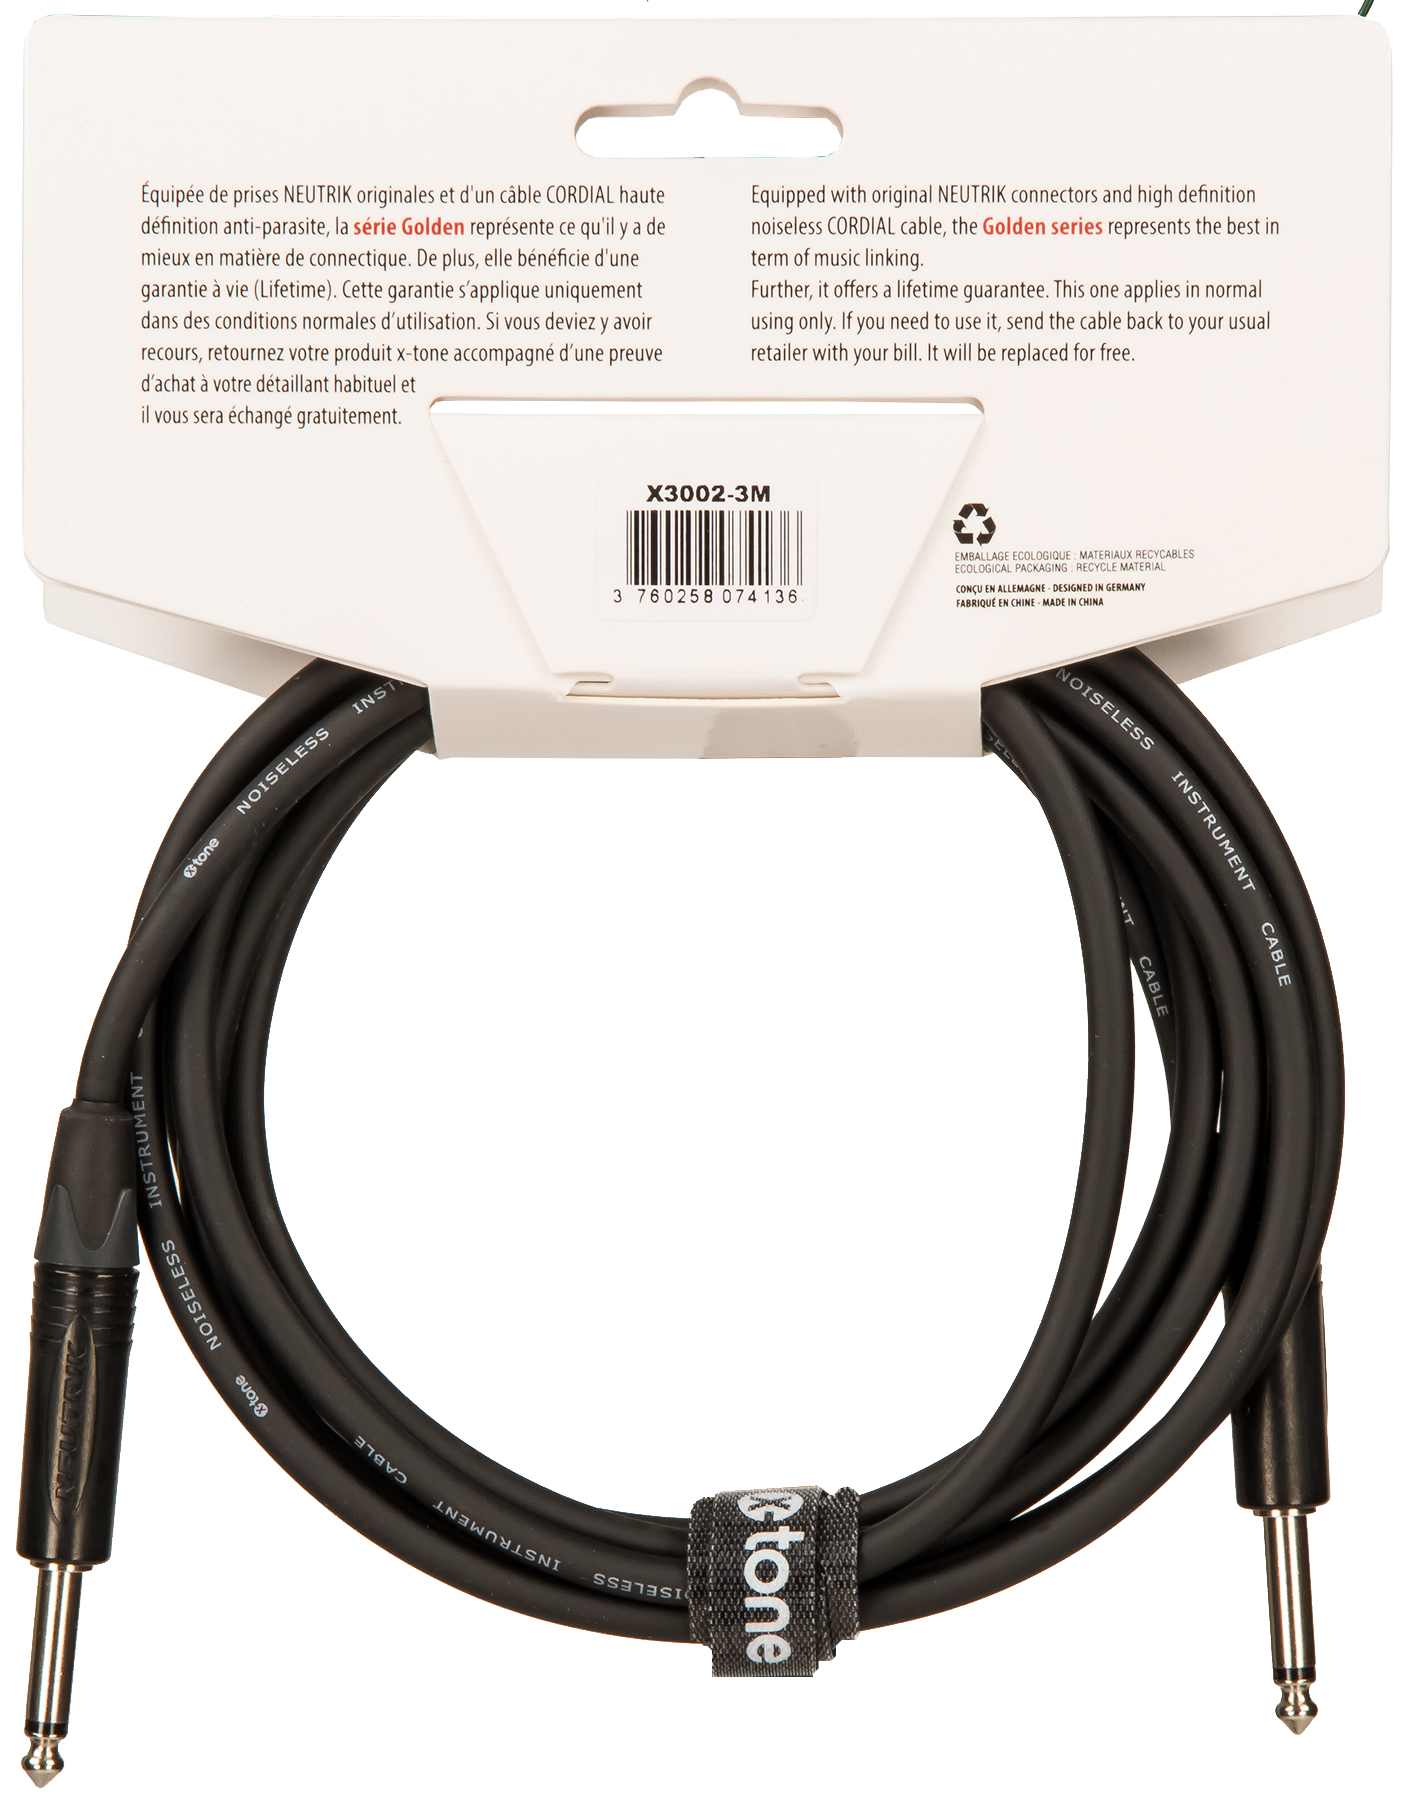 X-tone X3002-3m Instrument Cable Golden Series Neutrik Droit/droit 3m - Kabel - Variation 1